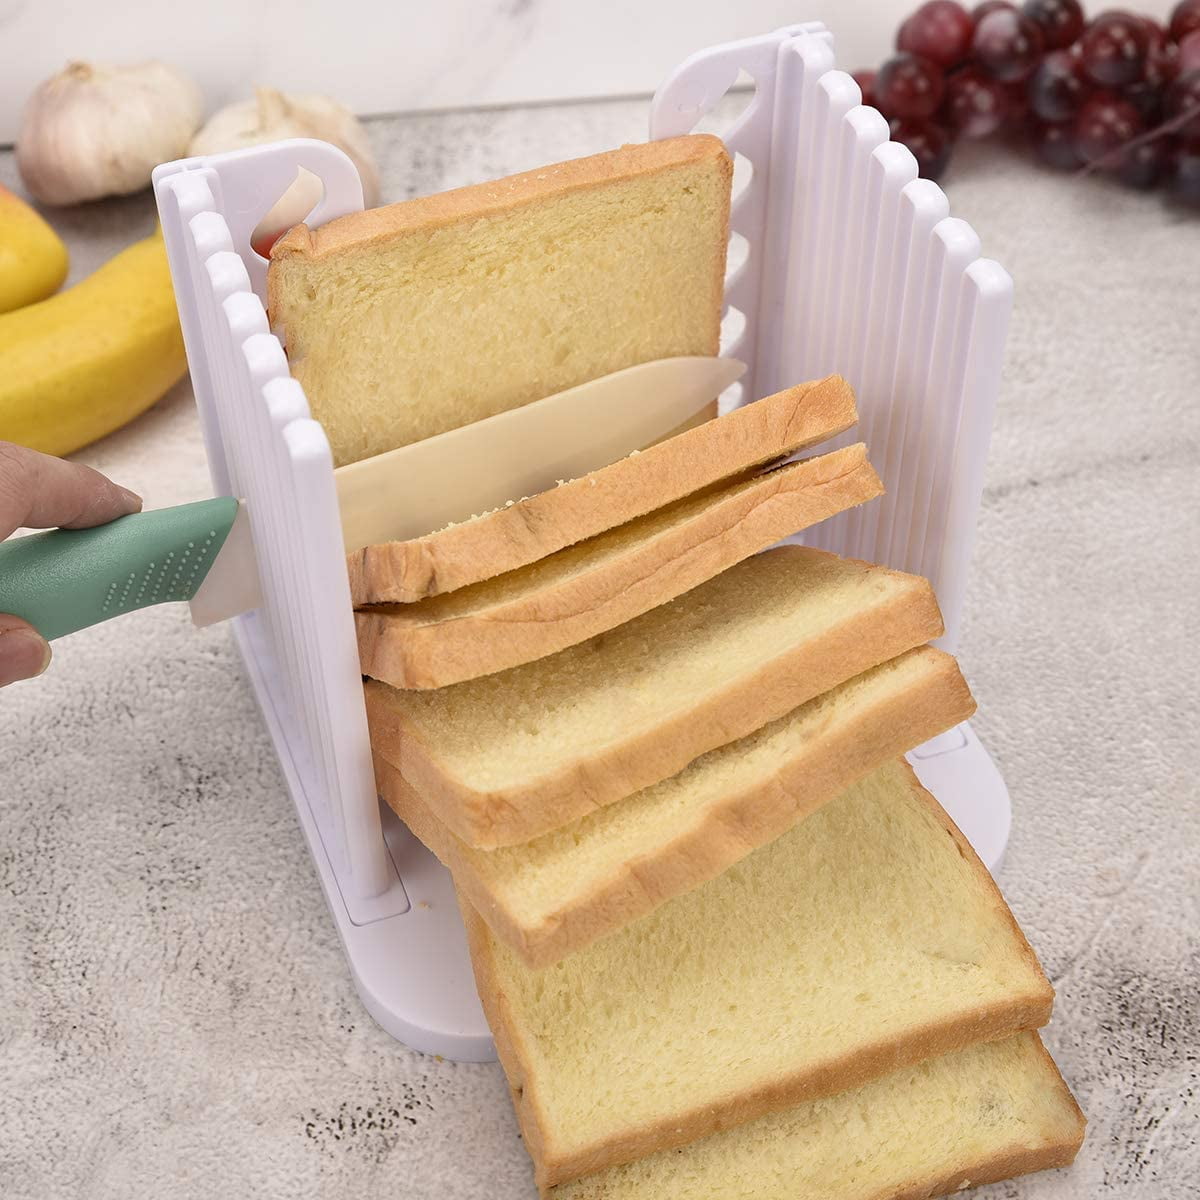 Muffins, Large Bagel Holder,Bread Slicer Bagel Slicer Bread/Bake/Bread Slicer Cutter,Sandwich Toast Bread slicerBread Slice for Bagels Breads 